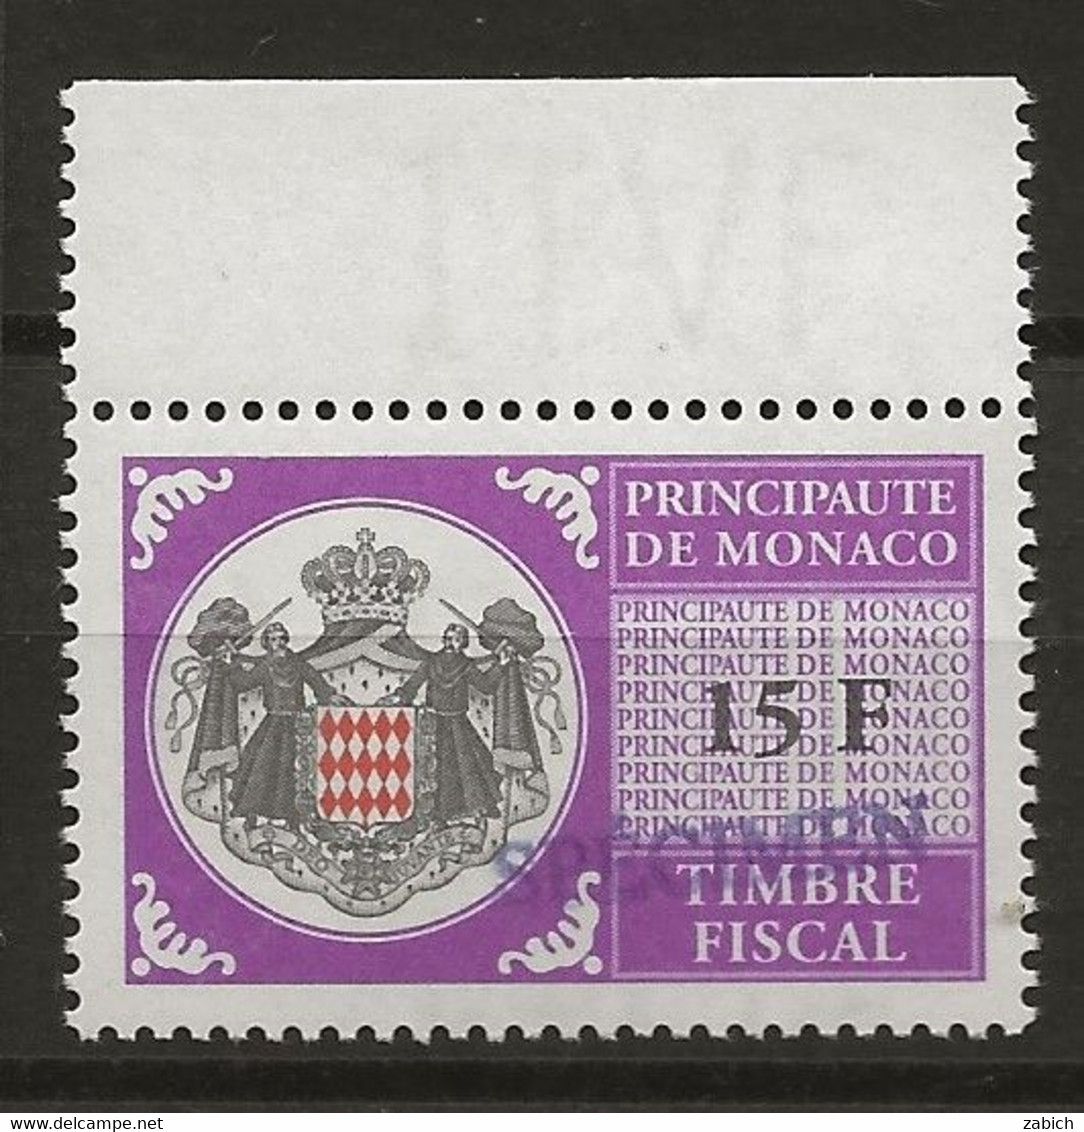 FISCAUX DE MONACO SERIE UNIFIEE N° 103 15 F Violet Rare Surchargé Spécimen Neuf Gomme Mnh (**) - Revenue